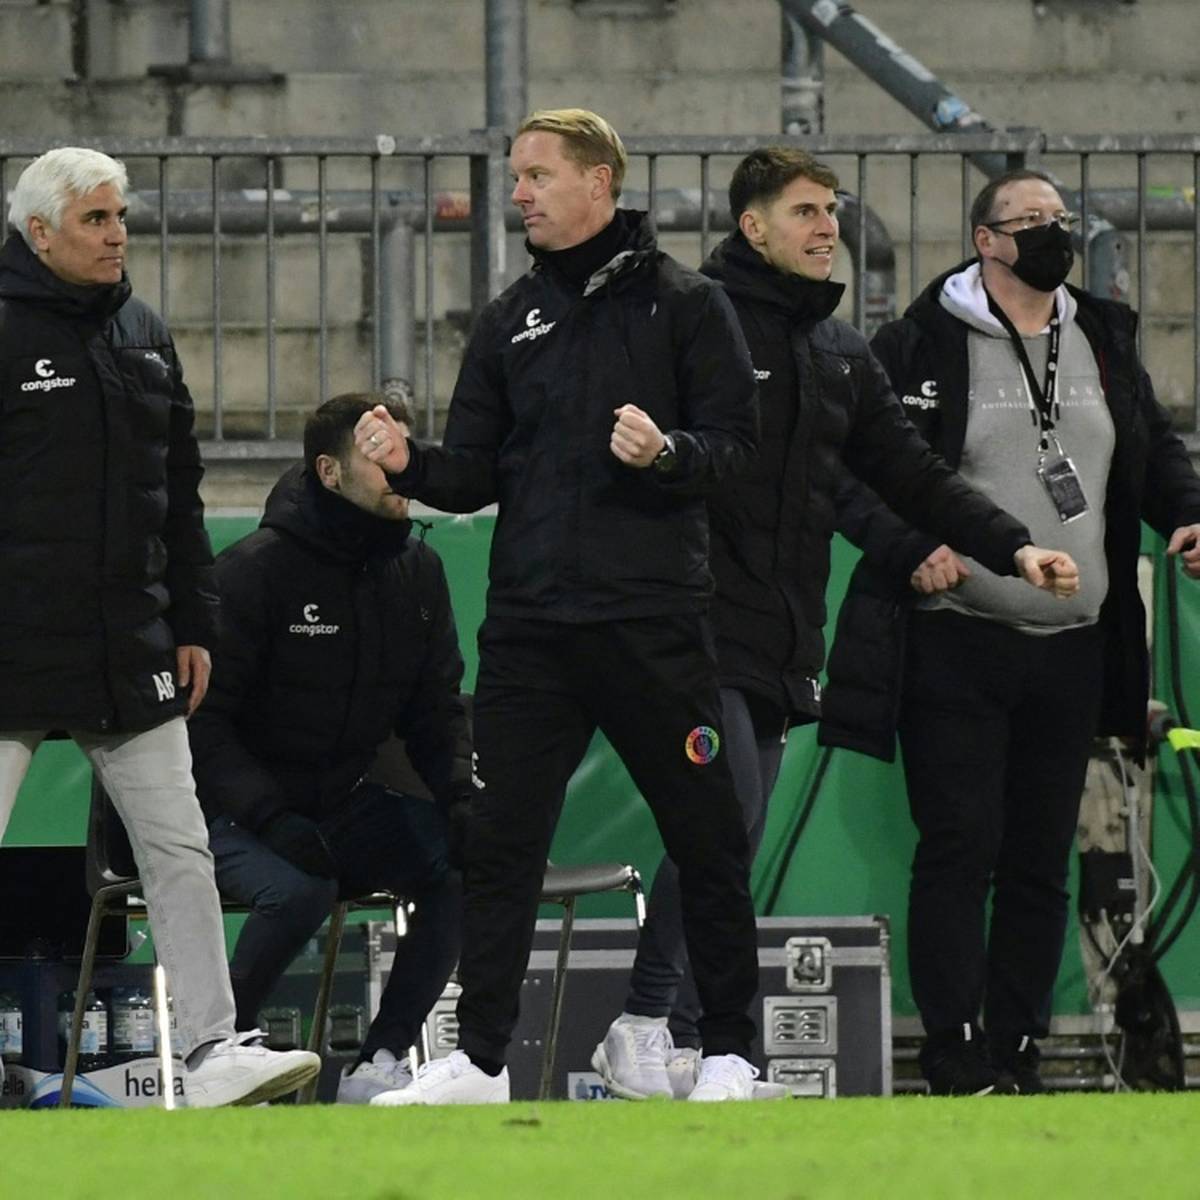 Die Pokalhelden vom FC St. Pauli haben nach der Sensation gegen den gestürzten Titelverteidiger kaum Zeit zu feiern.